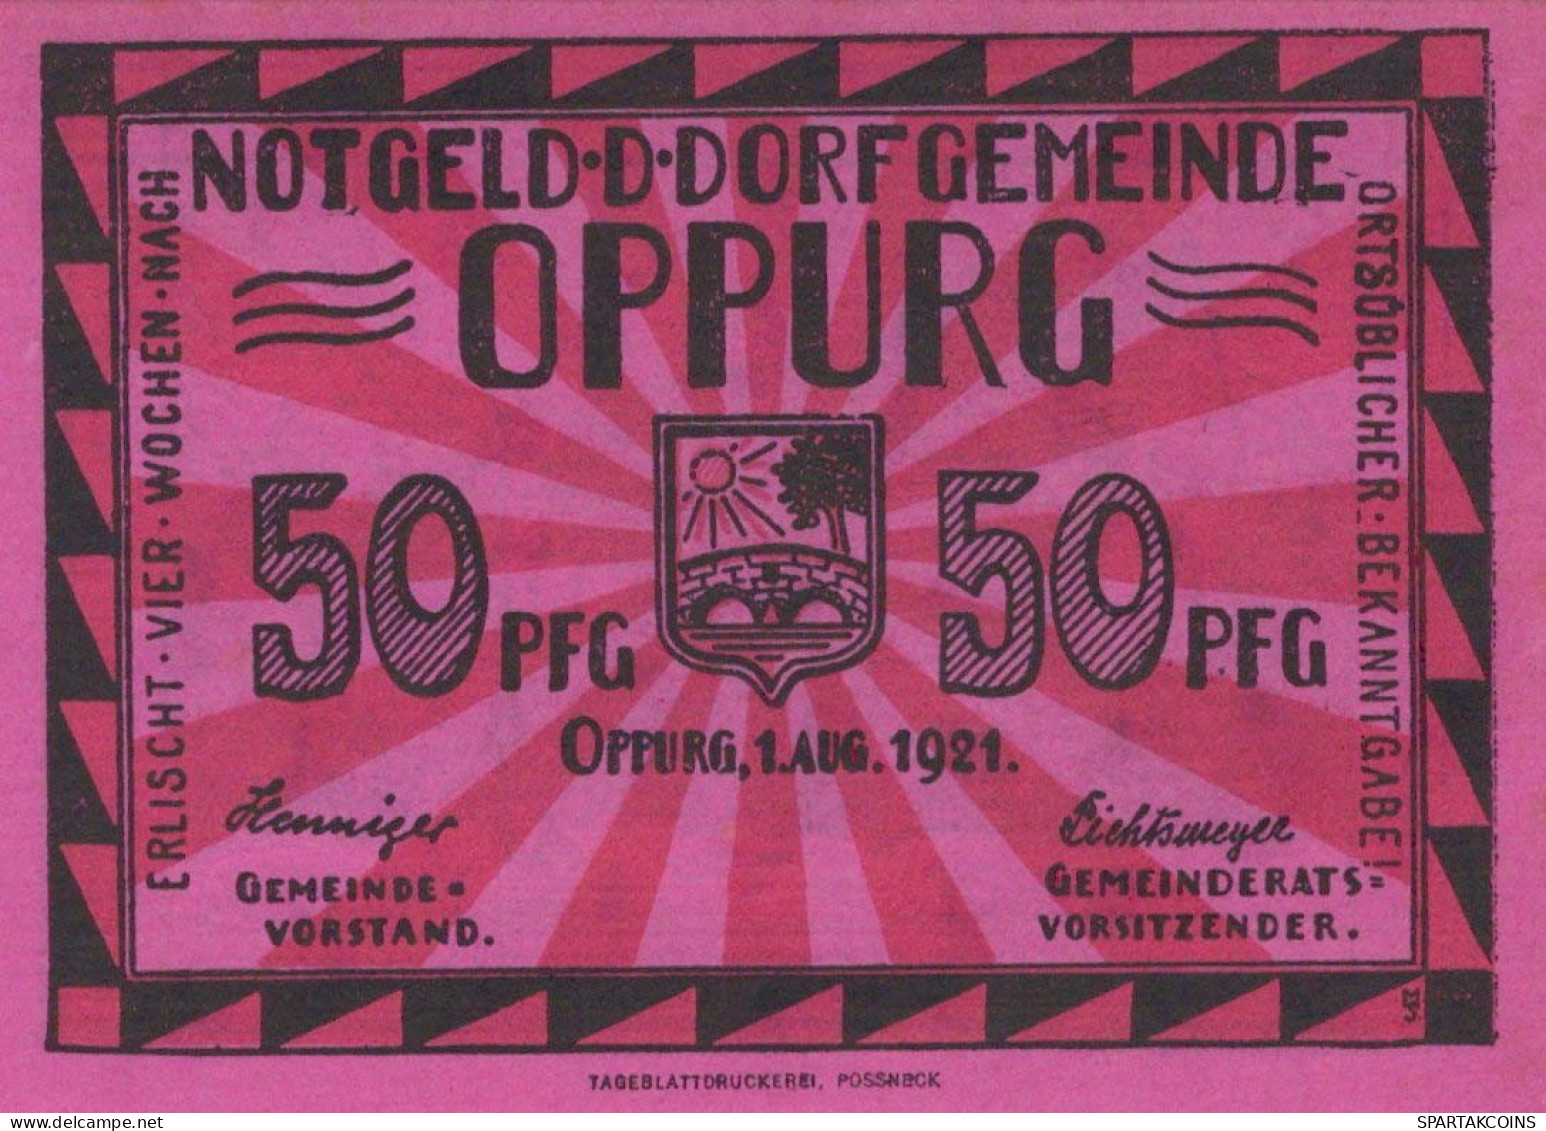 50 PFENNIG 1921 Stadt OPPURG Thuringia DEUTSCHLAND Notgeld Banknote #PF391 - [11] Local Banknote Issues